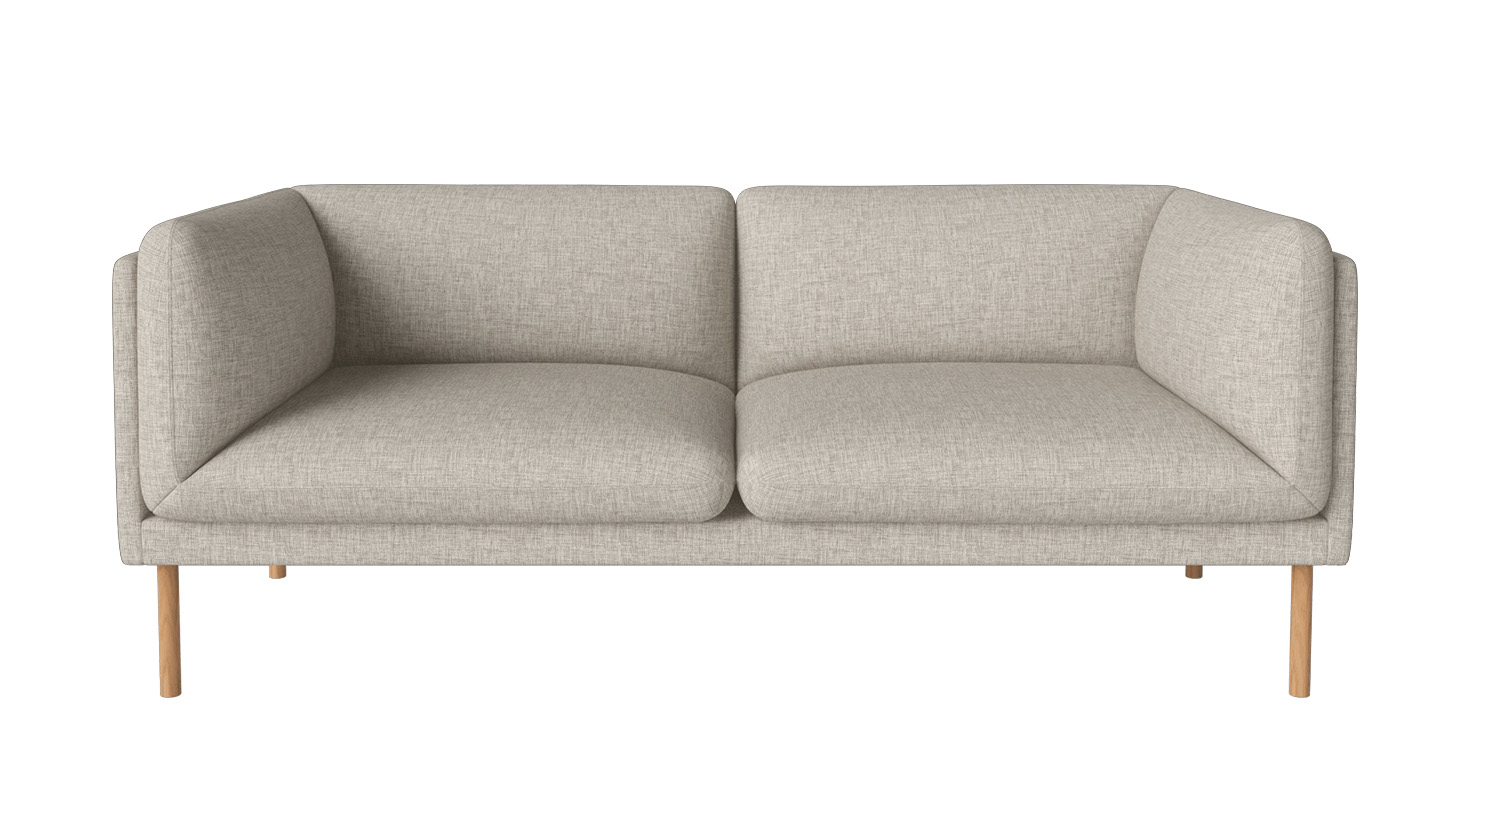 Bolia designové sedačky Paste 2 Seater Sofa (šířka 180 cm)